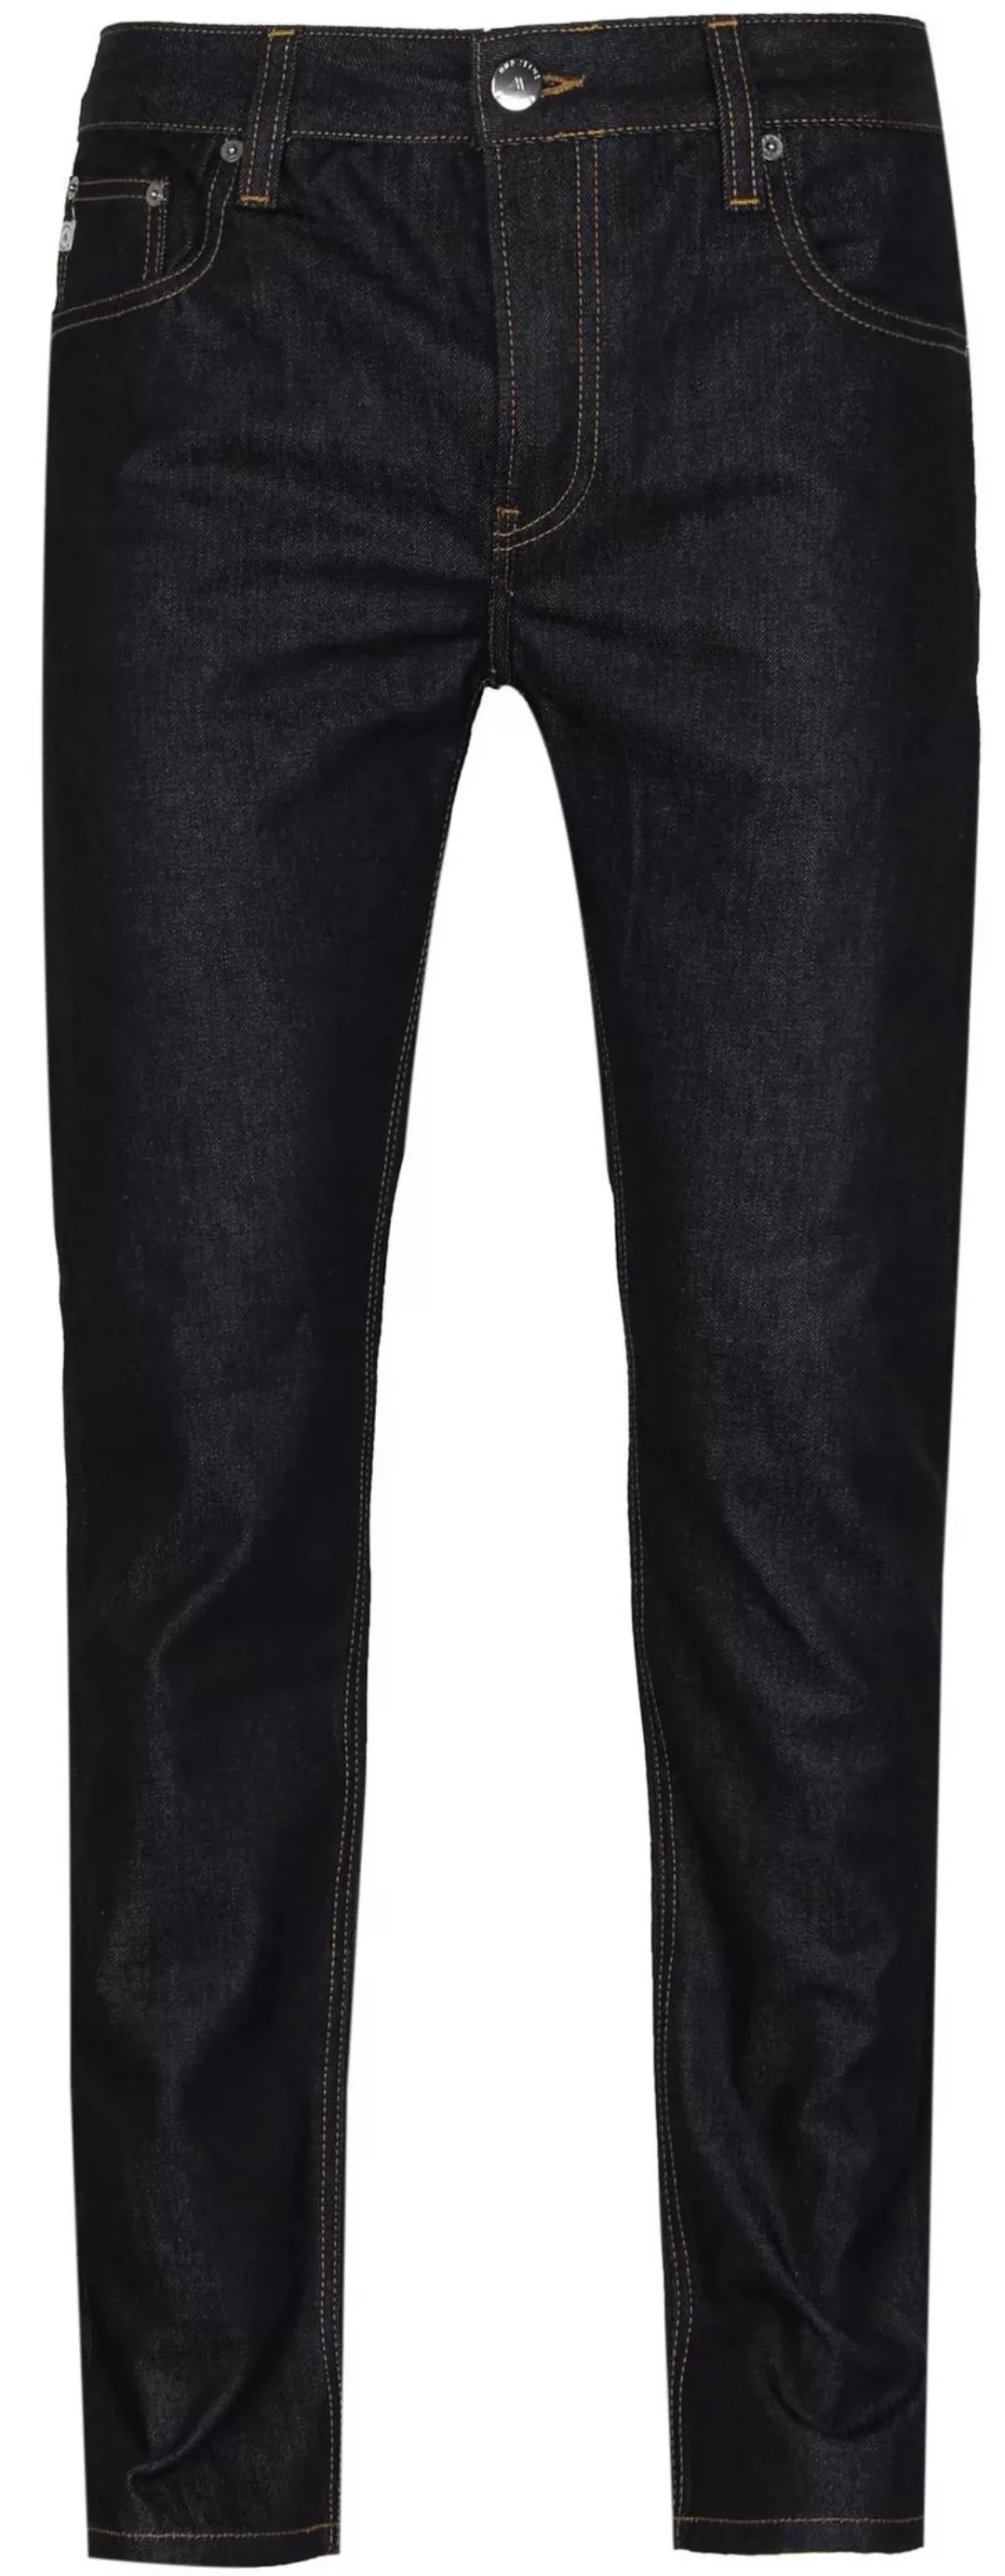 MUD Jeans Denim Regular Bryce Indigo Dunkelbau - Größe W 32 - L 36 günstig online kaufen